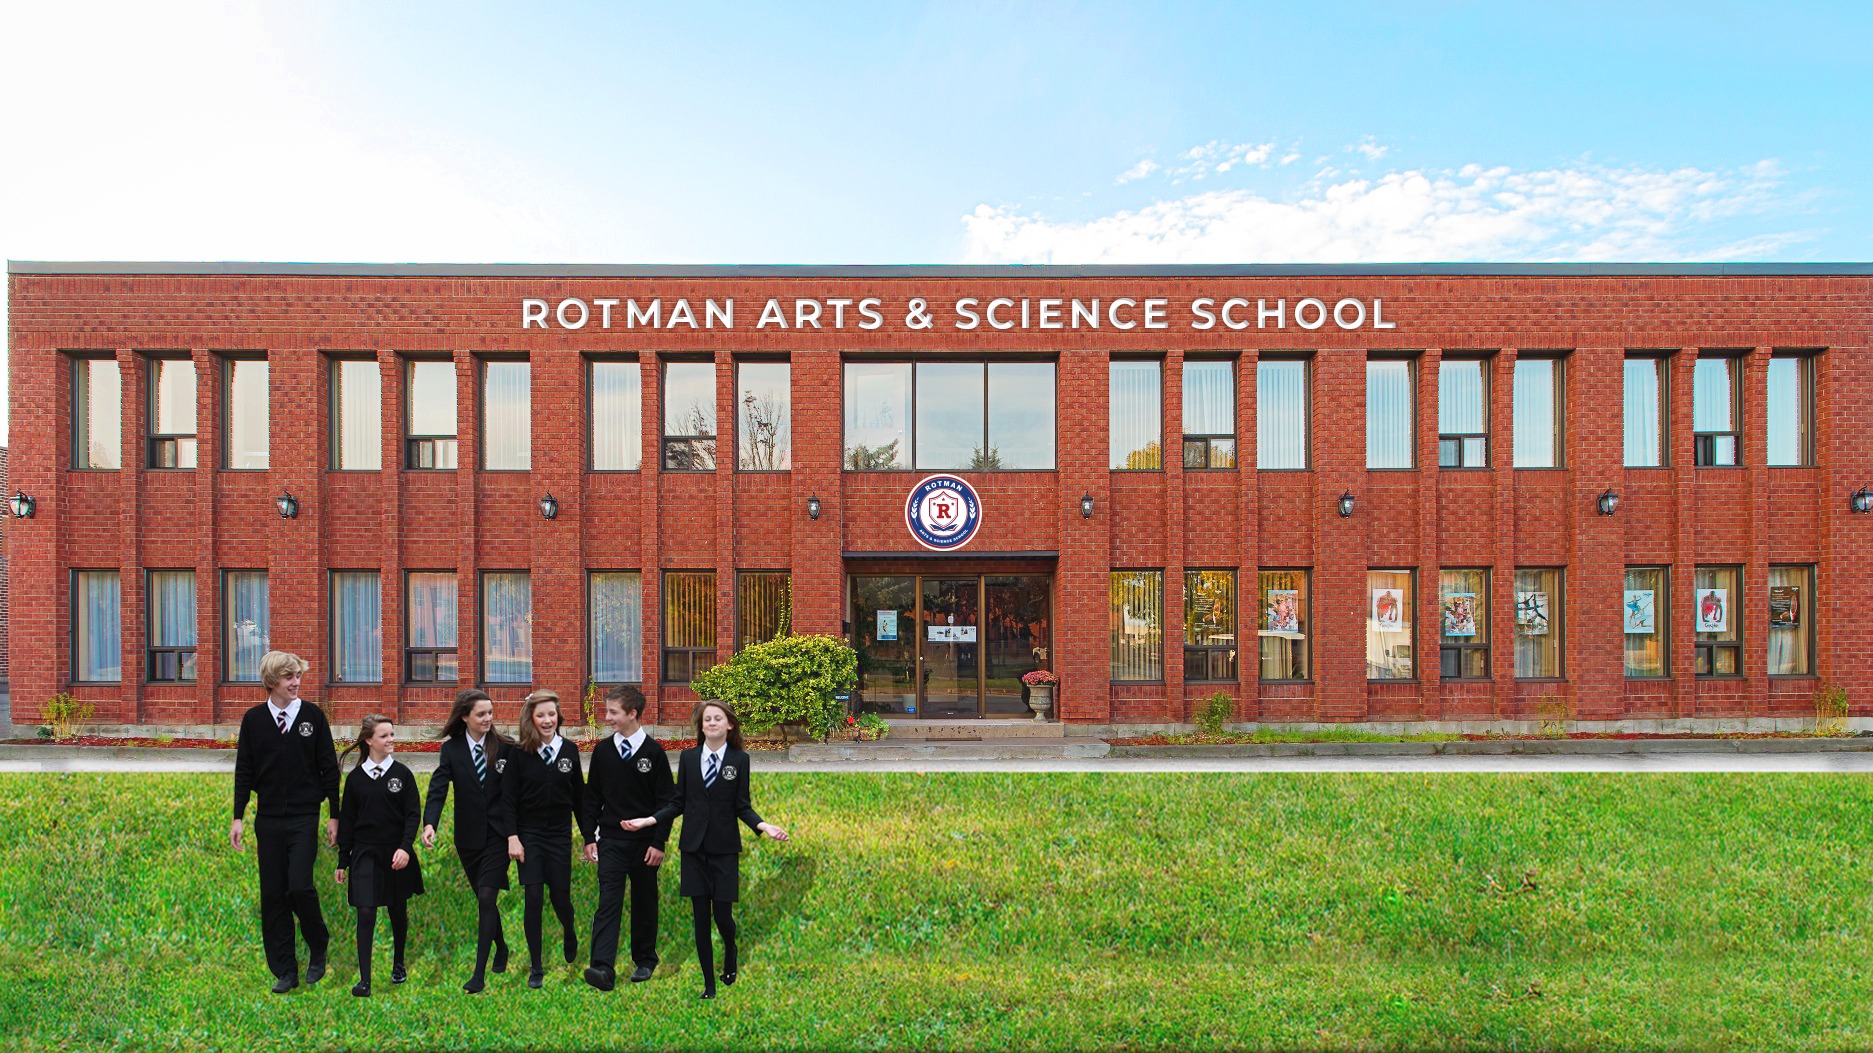 Trường Nghệ thuật và Khoa học Rotman là một trong những ngôi trường tốt nhất ở Canada